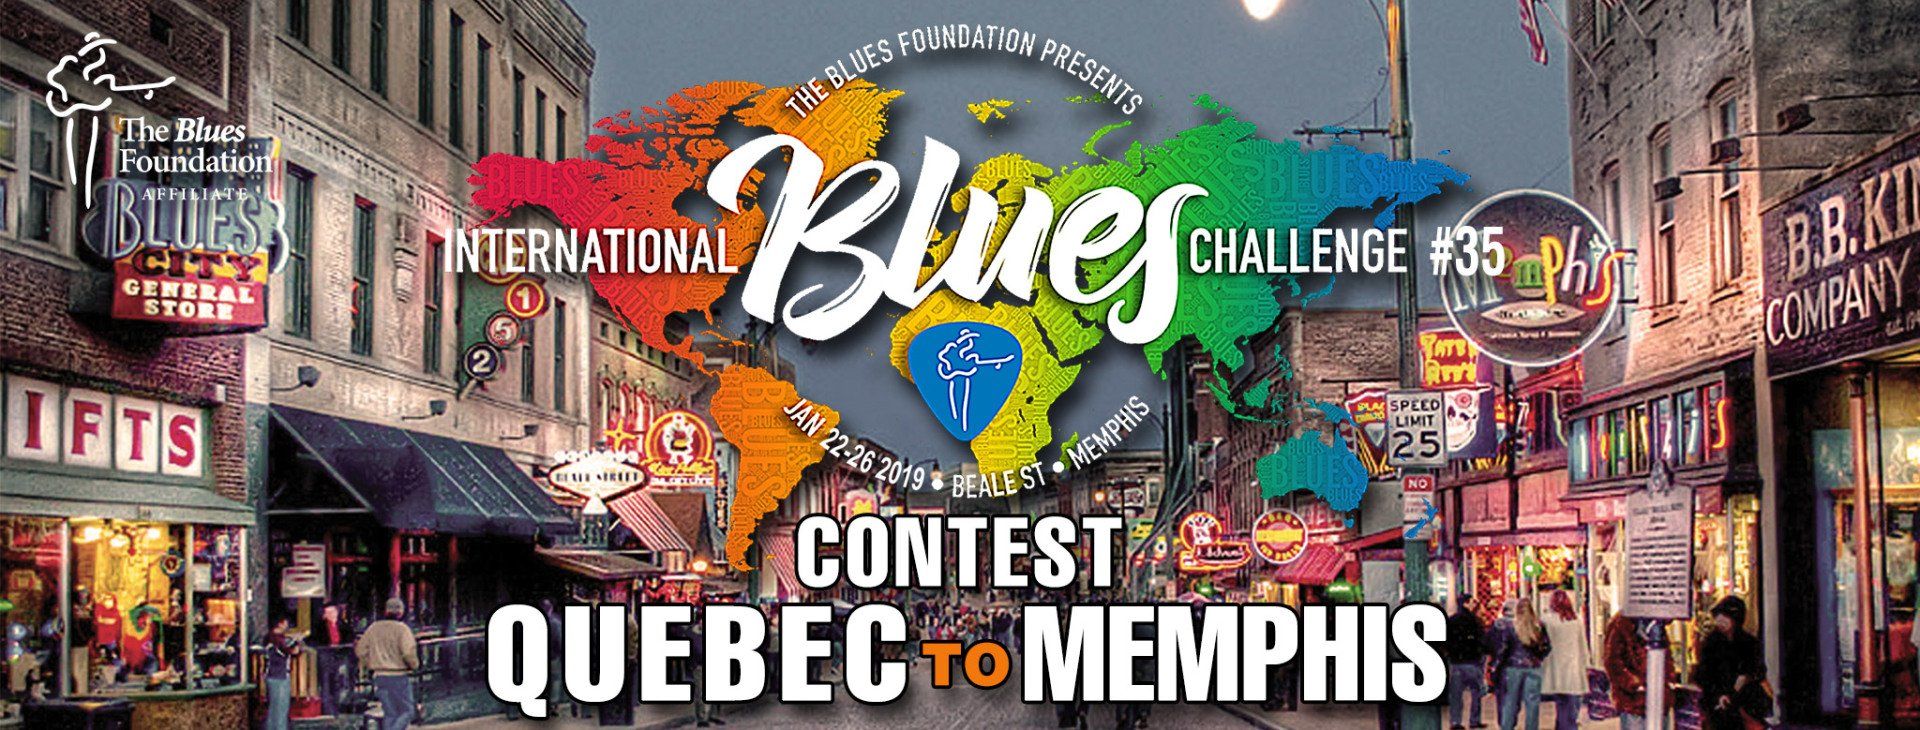 Quebec to Memphis contest header